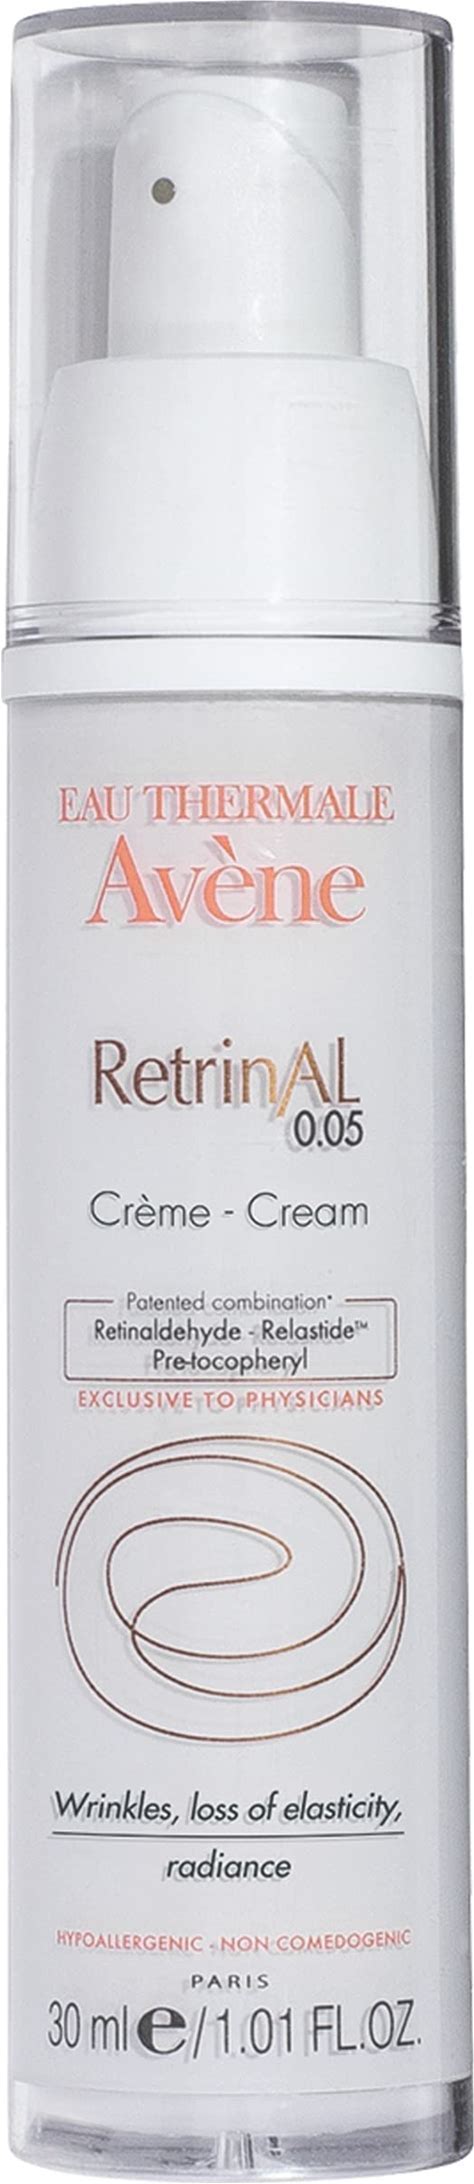 RetrinAL 0.05 Cream